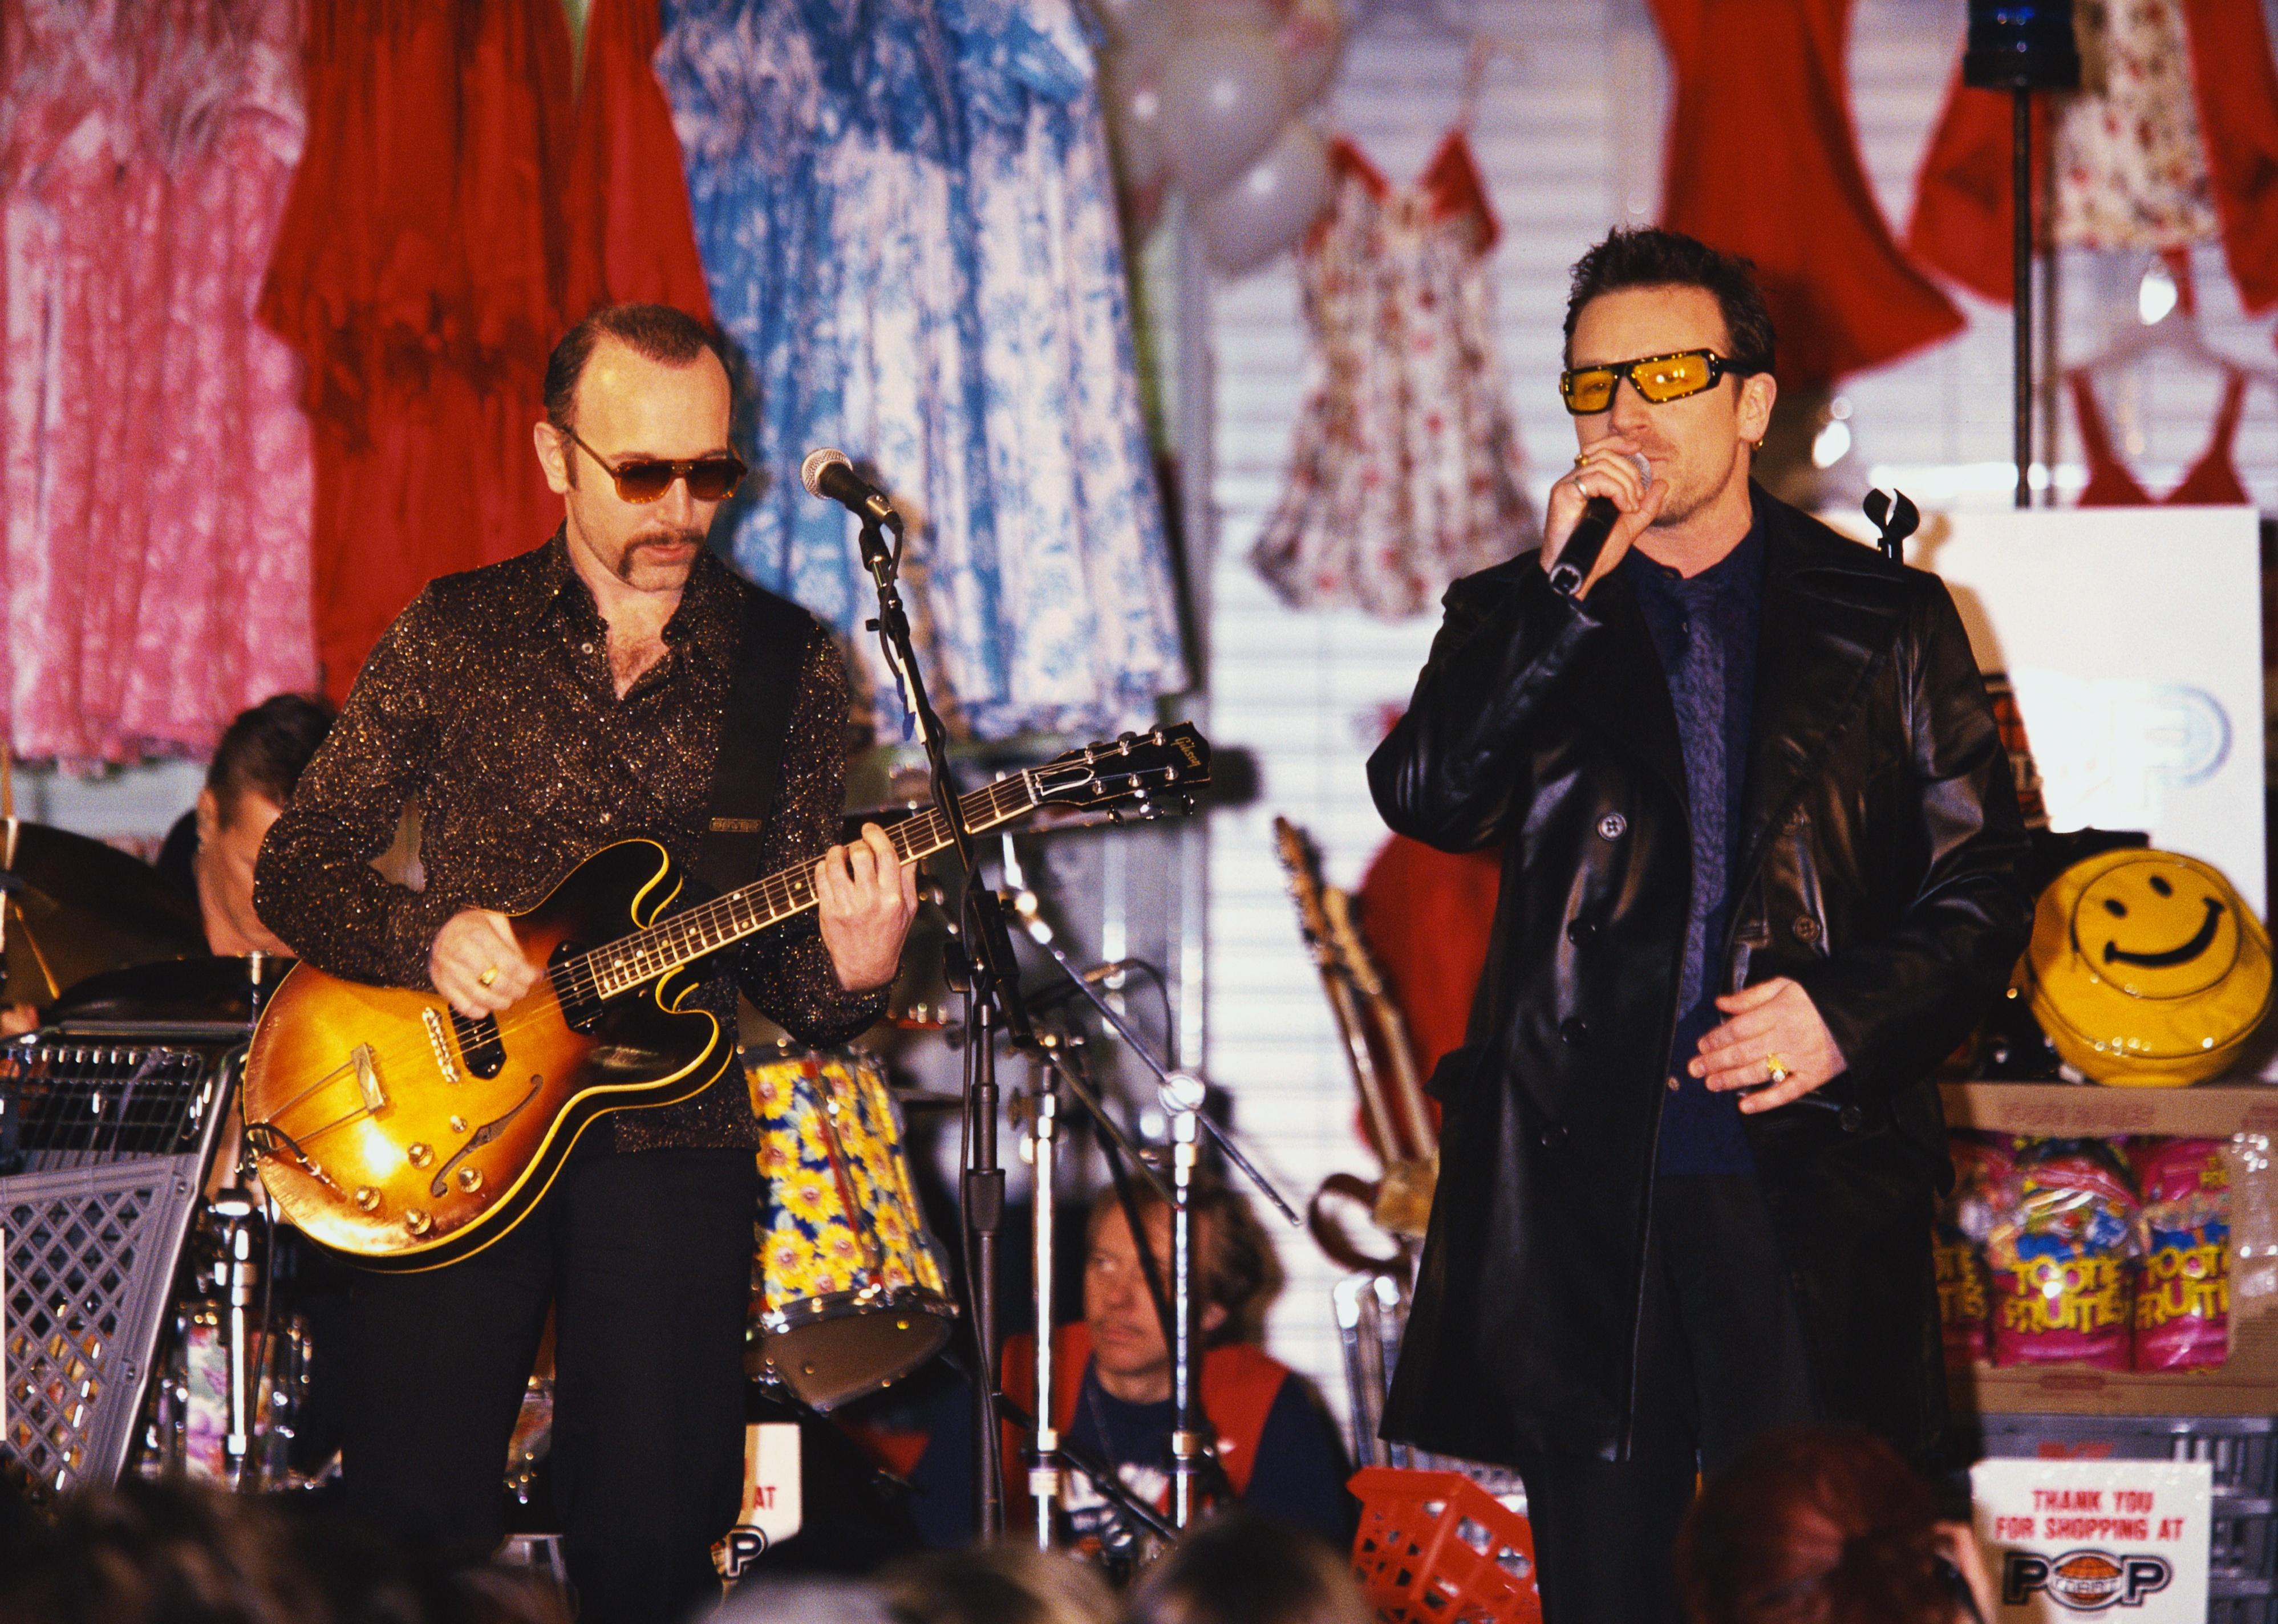 nachrichten The Edge und Bono von U2 treten auf der Bühne auf.